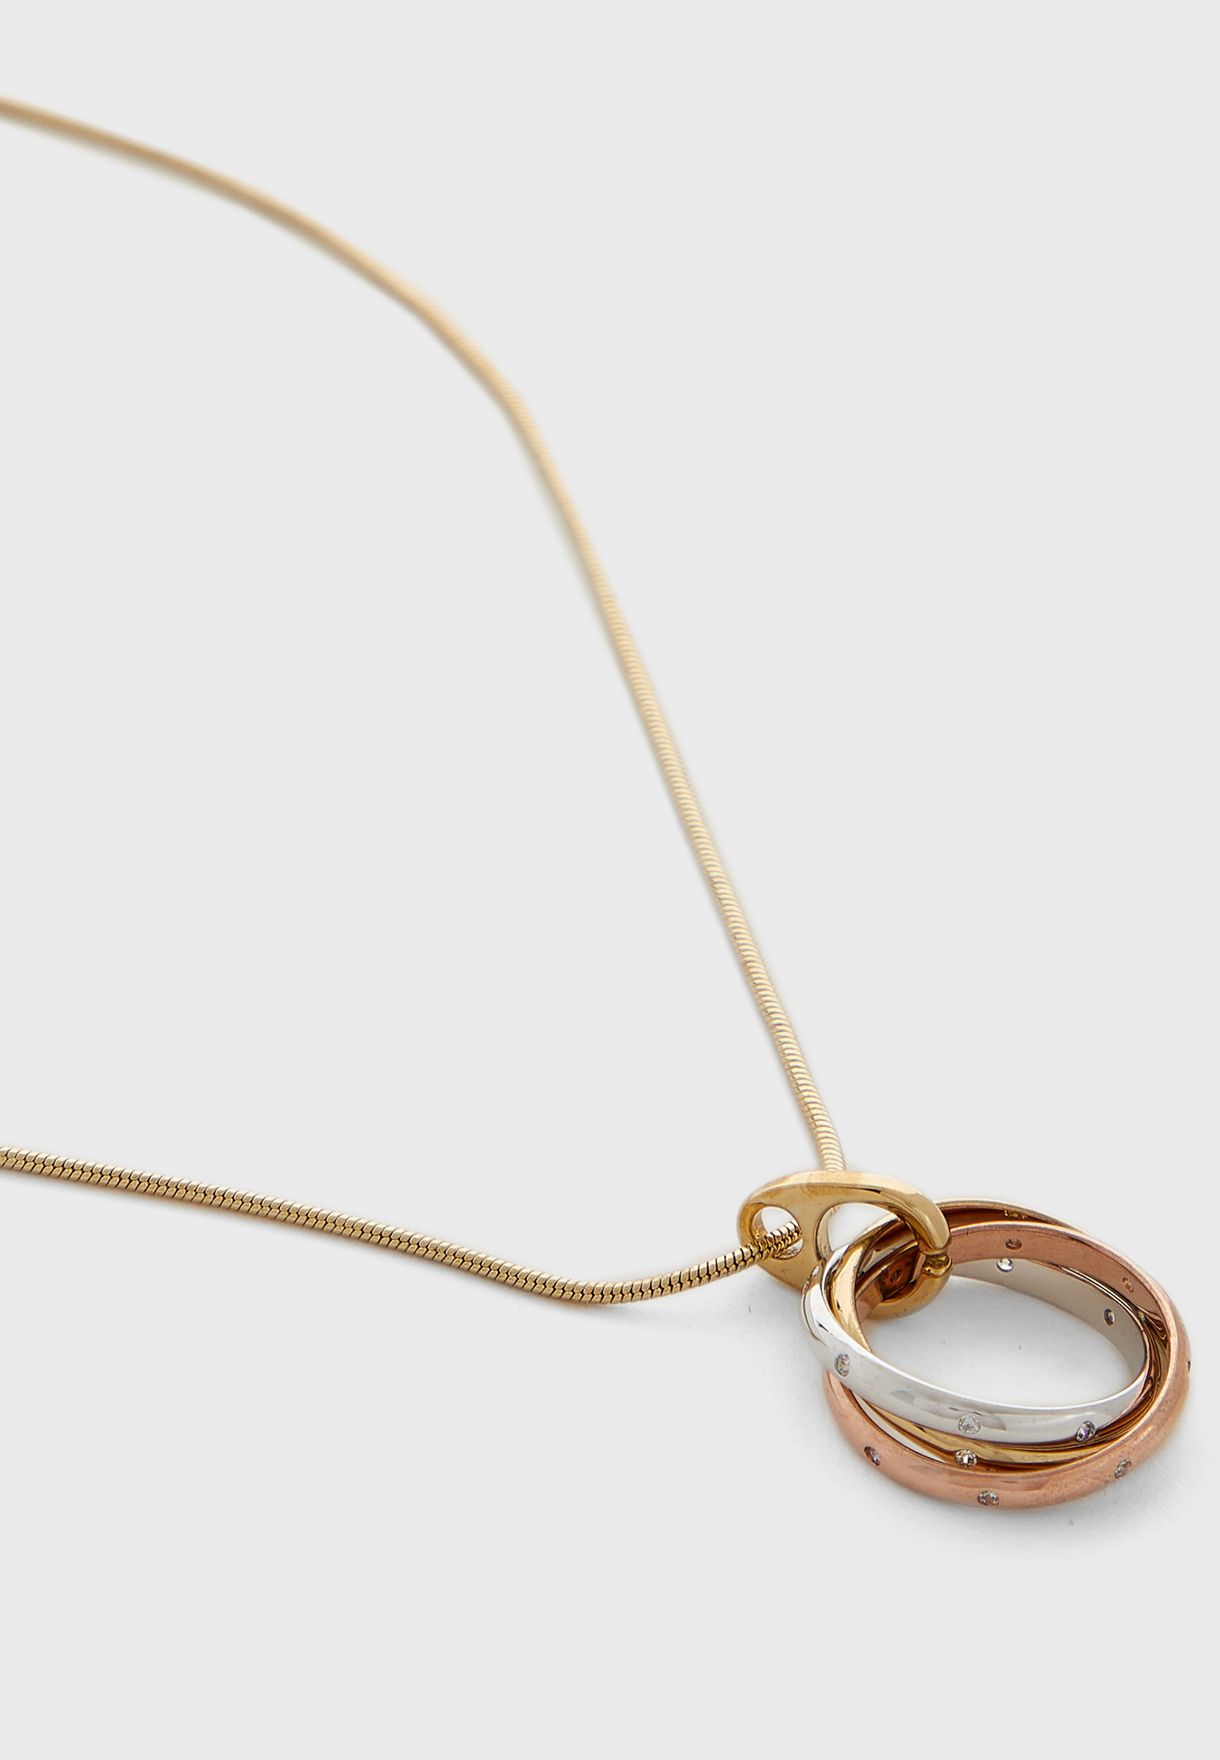 Russian Necklace+Earrings+Bracelet Set